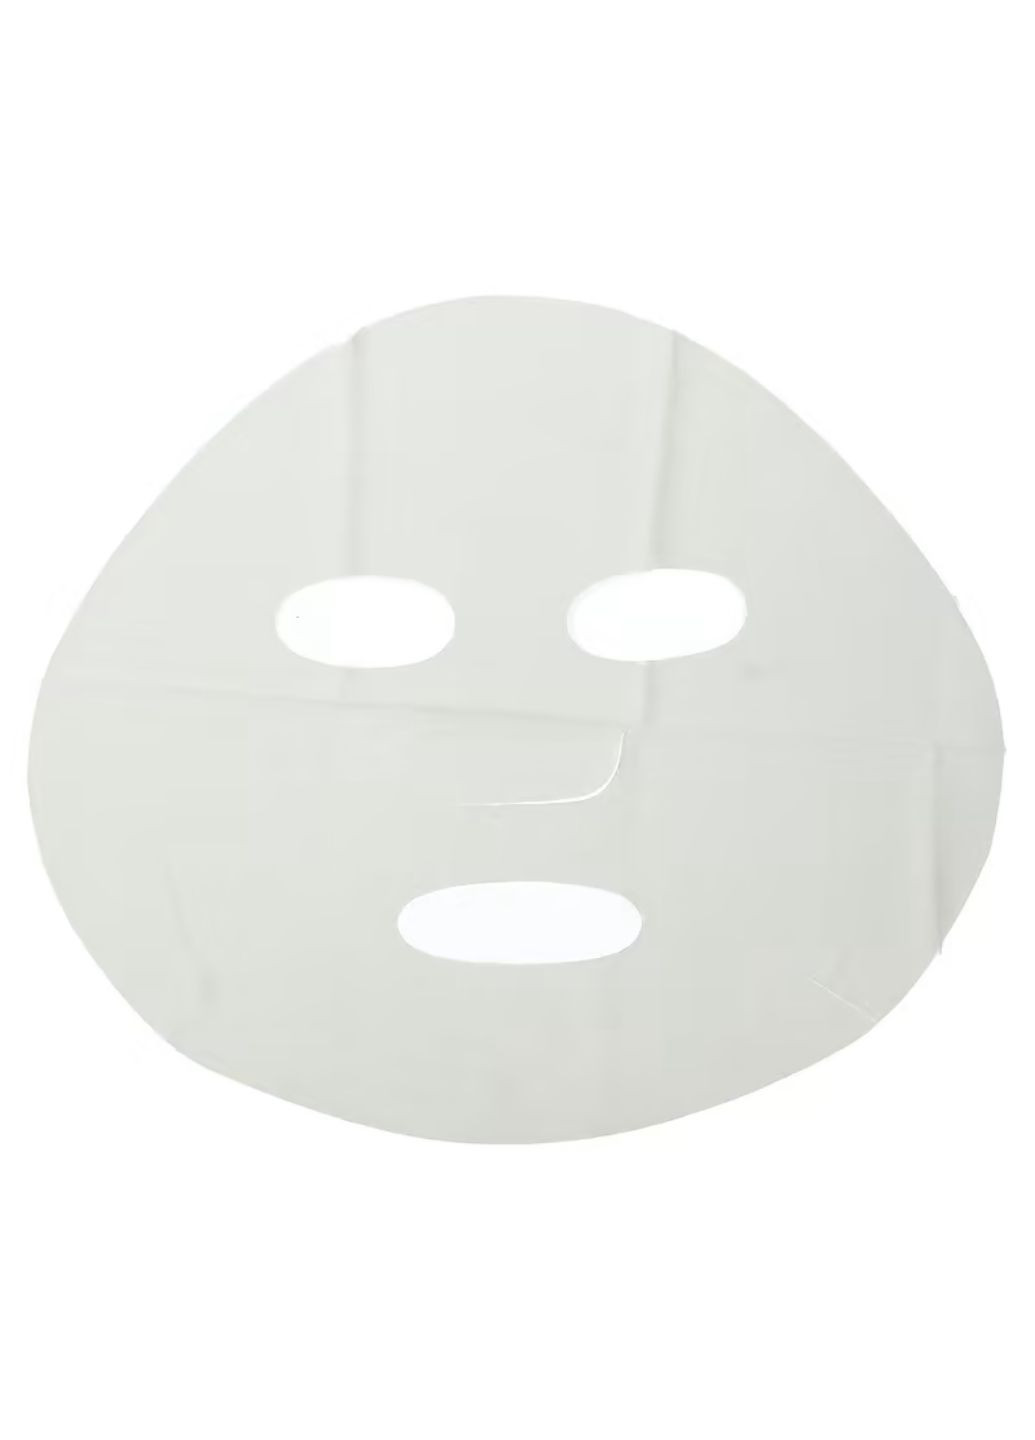 Тканевая маска для лица с экстрактом апельсина Юдзу Blood Orange Faciak Mask, 25 мл Images (276002660)